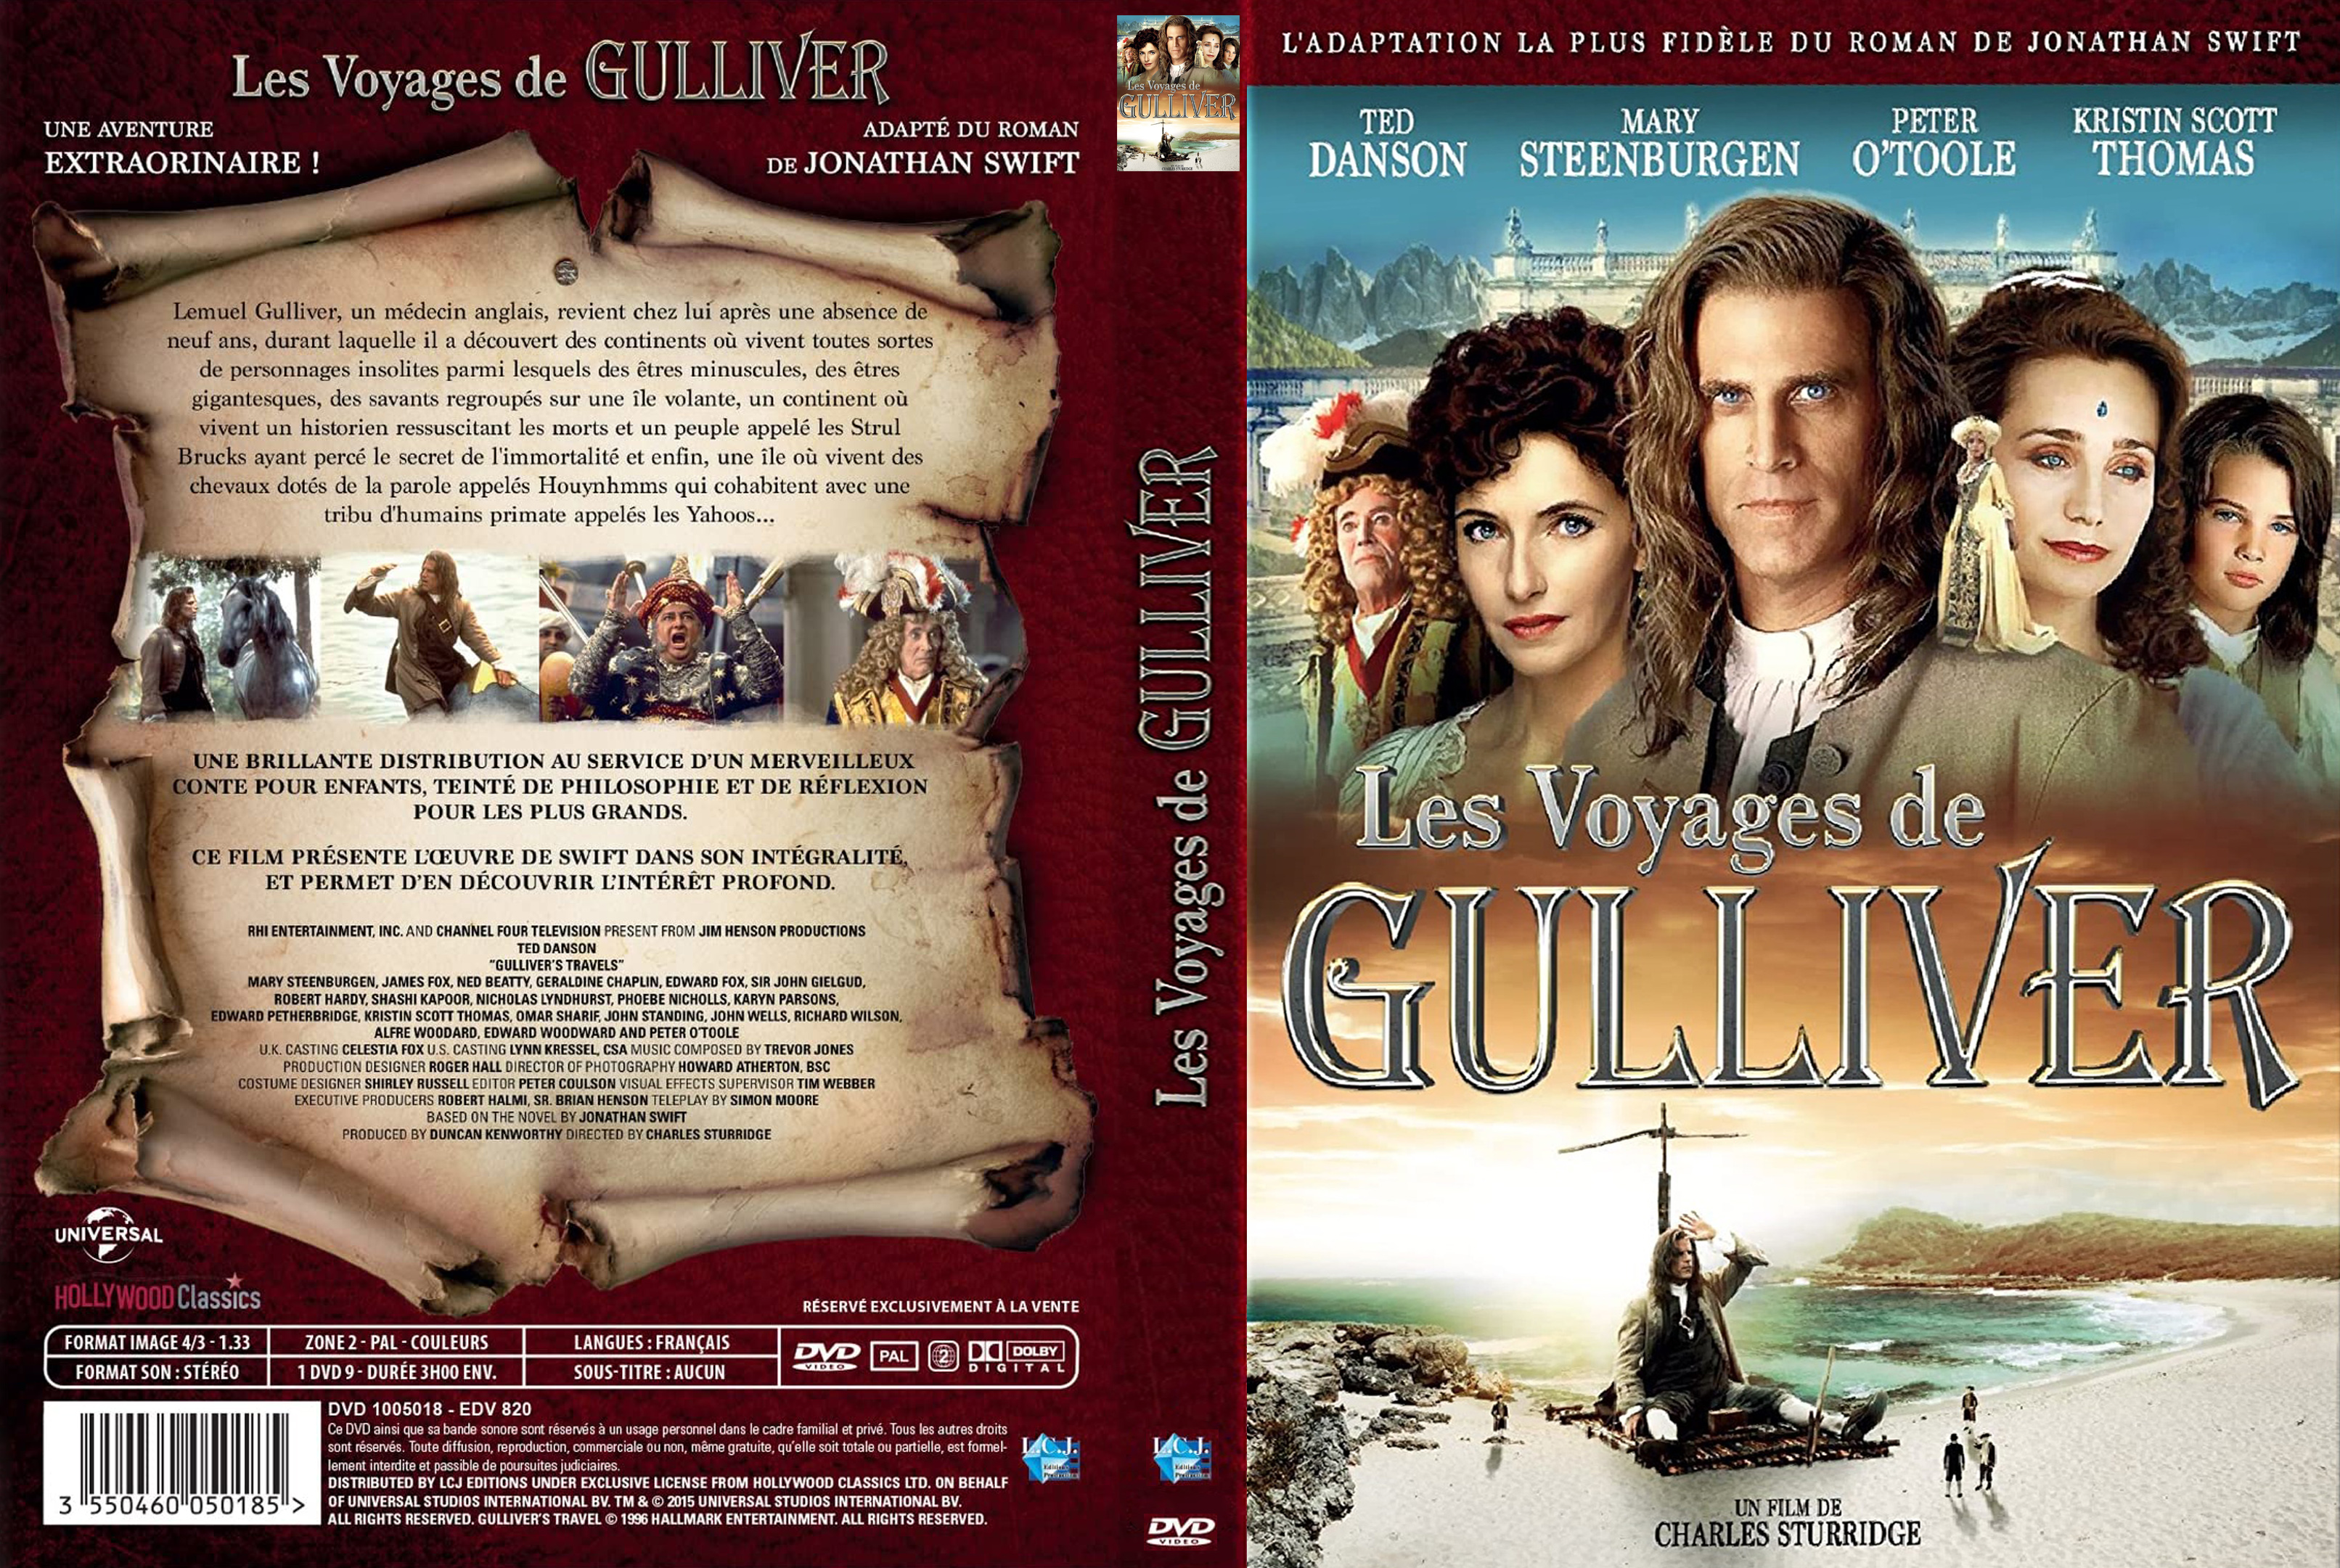 Jaquette DVD Les voyages de Gulliver (1995) custom v2